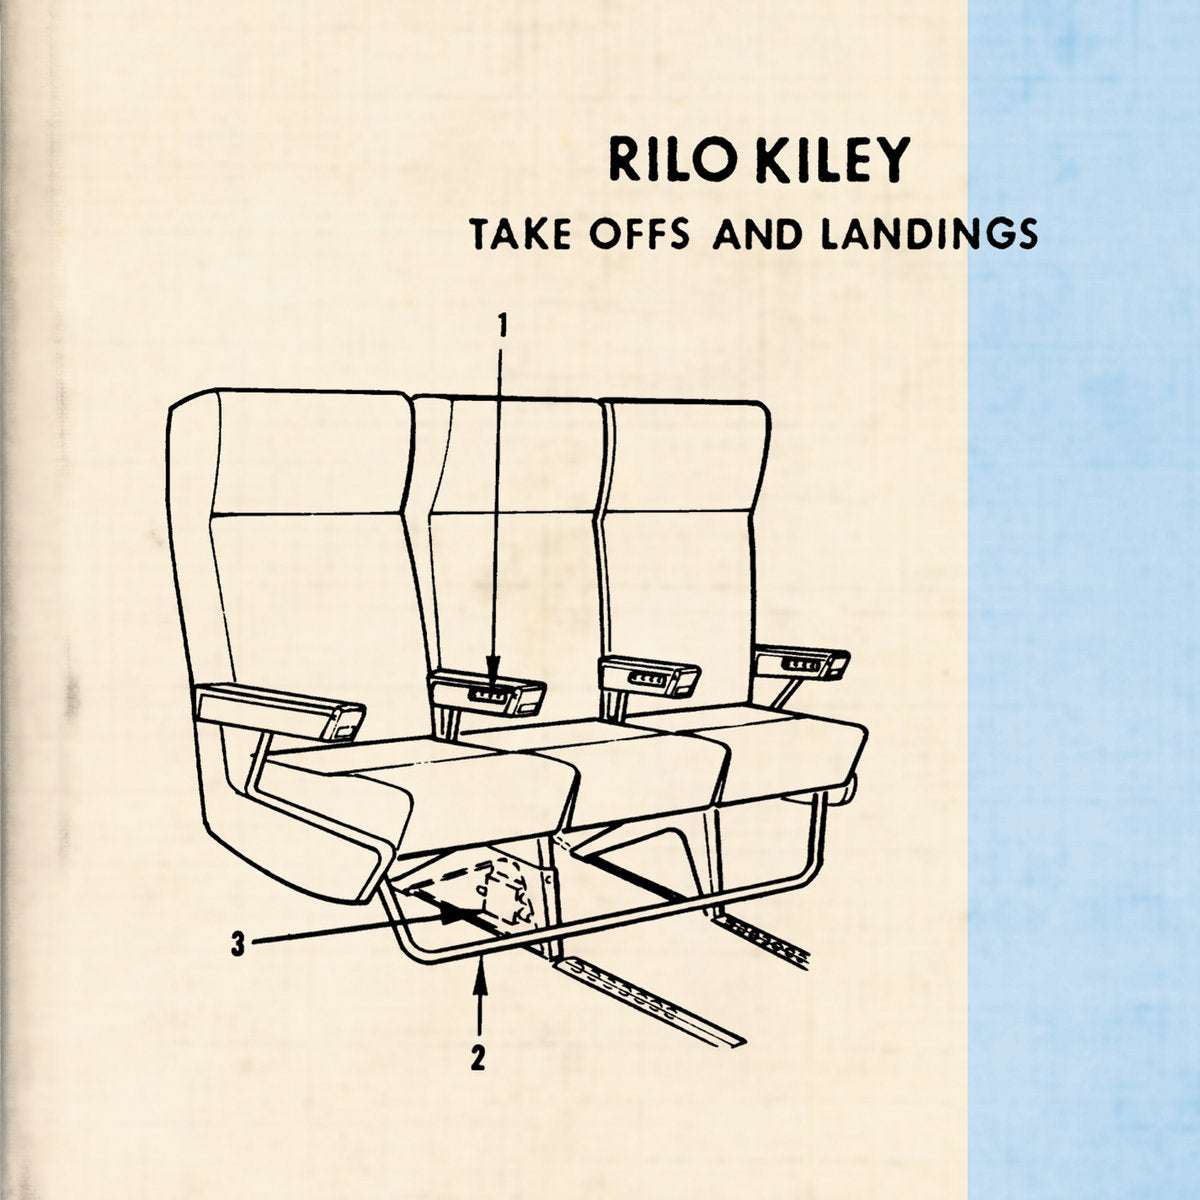 RILO KILEY - Take Offs And Landings (20th Anniv. Reissue) - 2LP - 180g White Vinyl